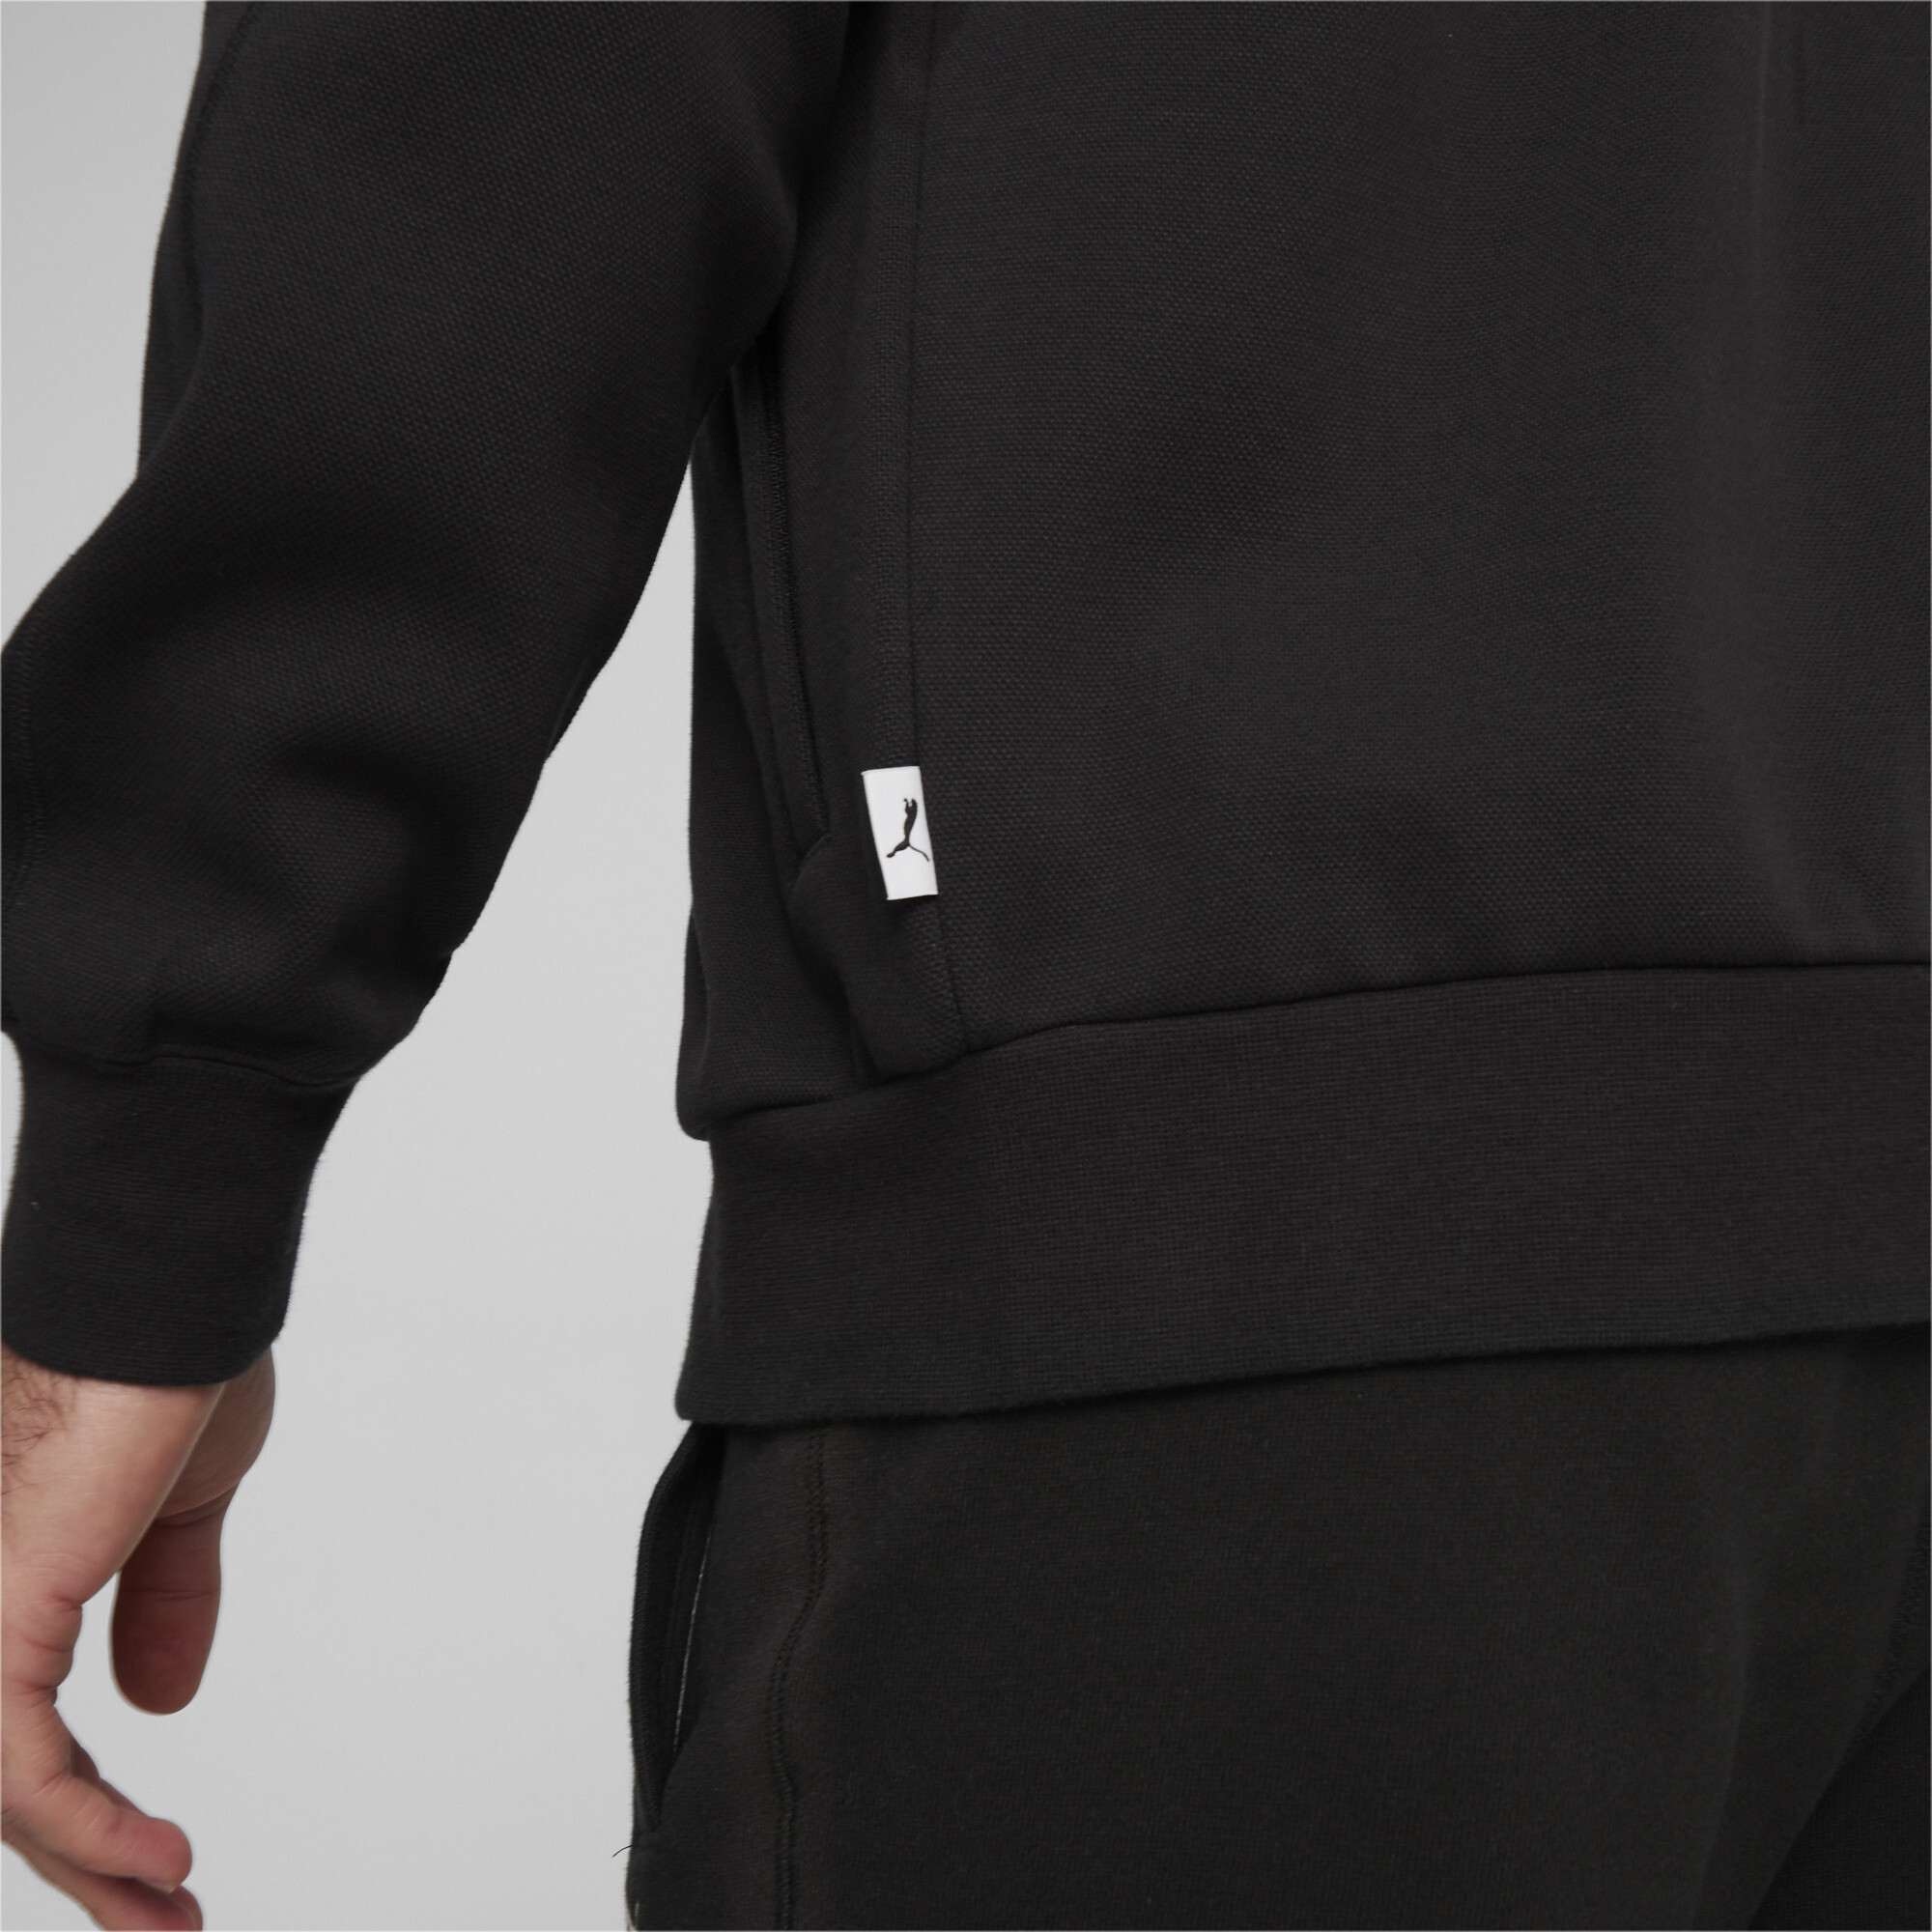 Men's PUMA MMQ T7 Track Jacket In Black, Size Small